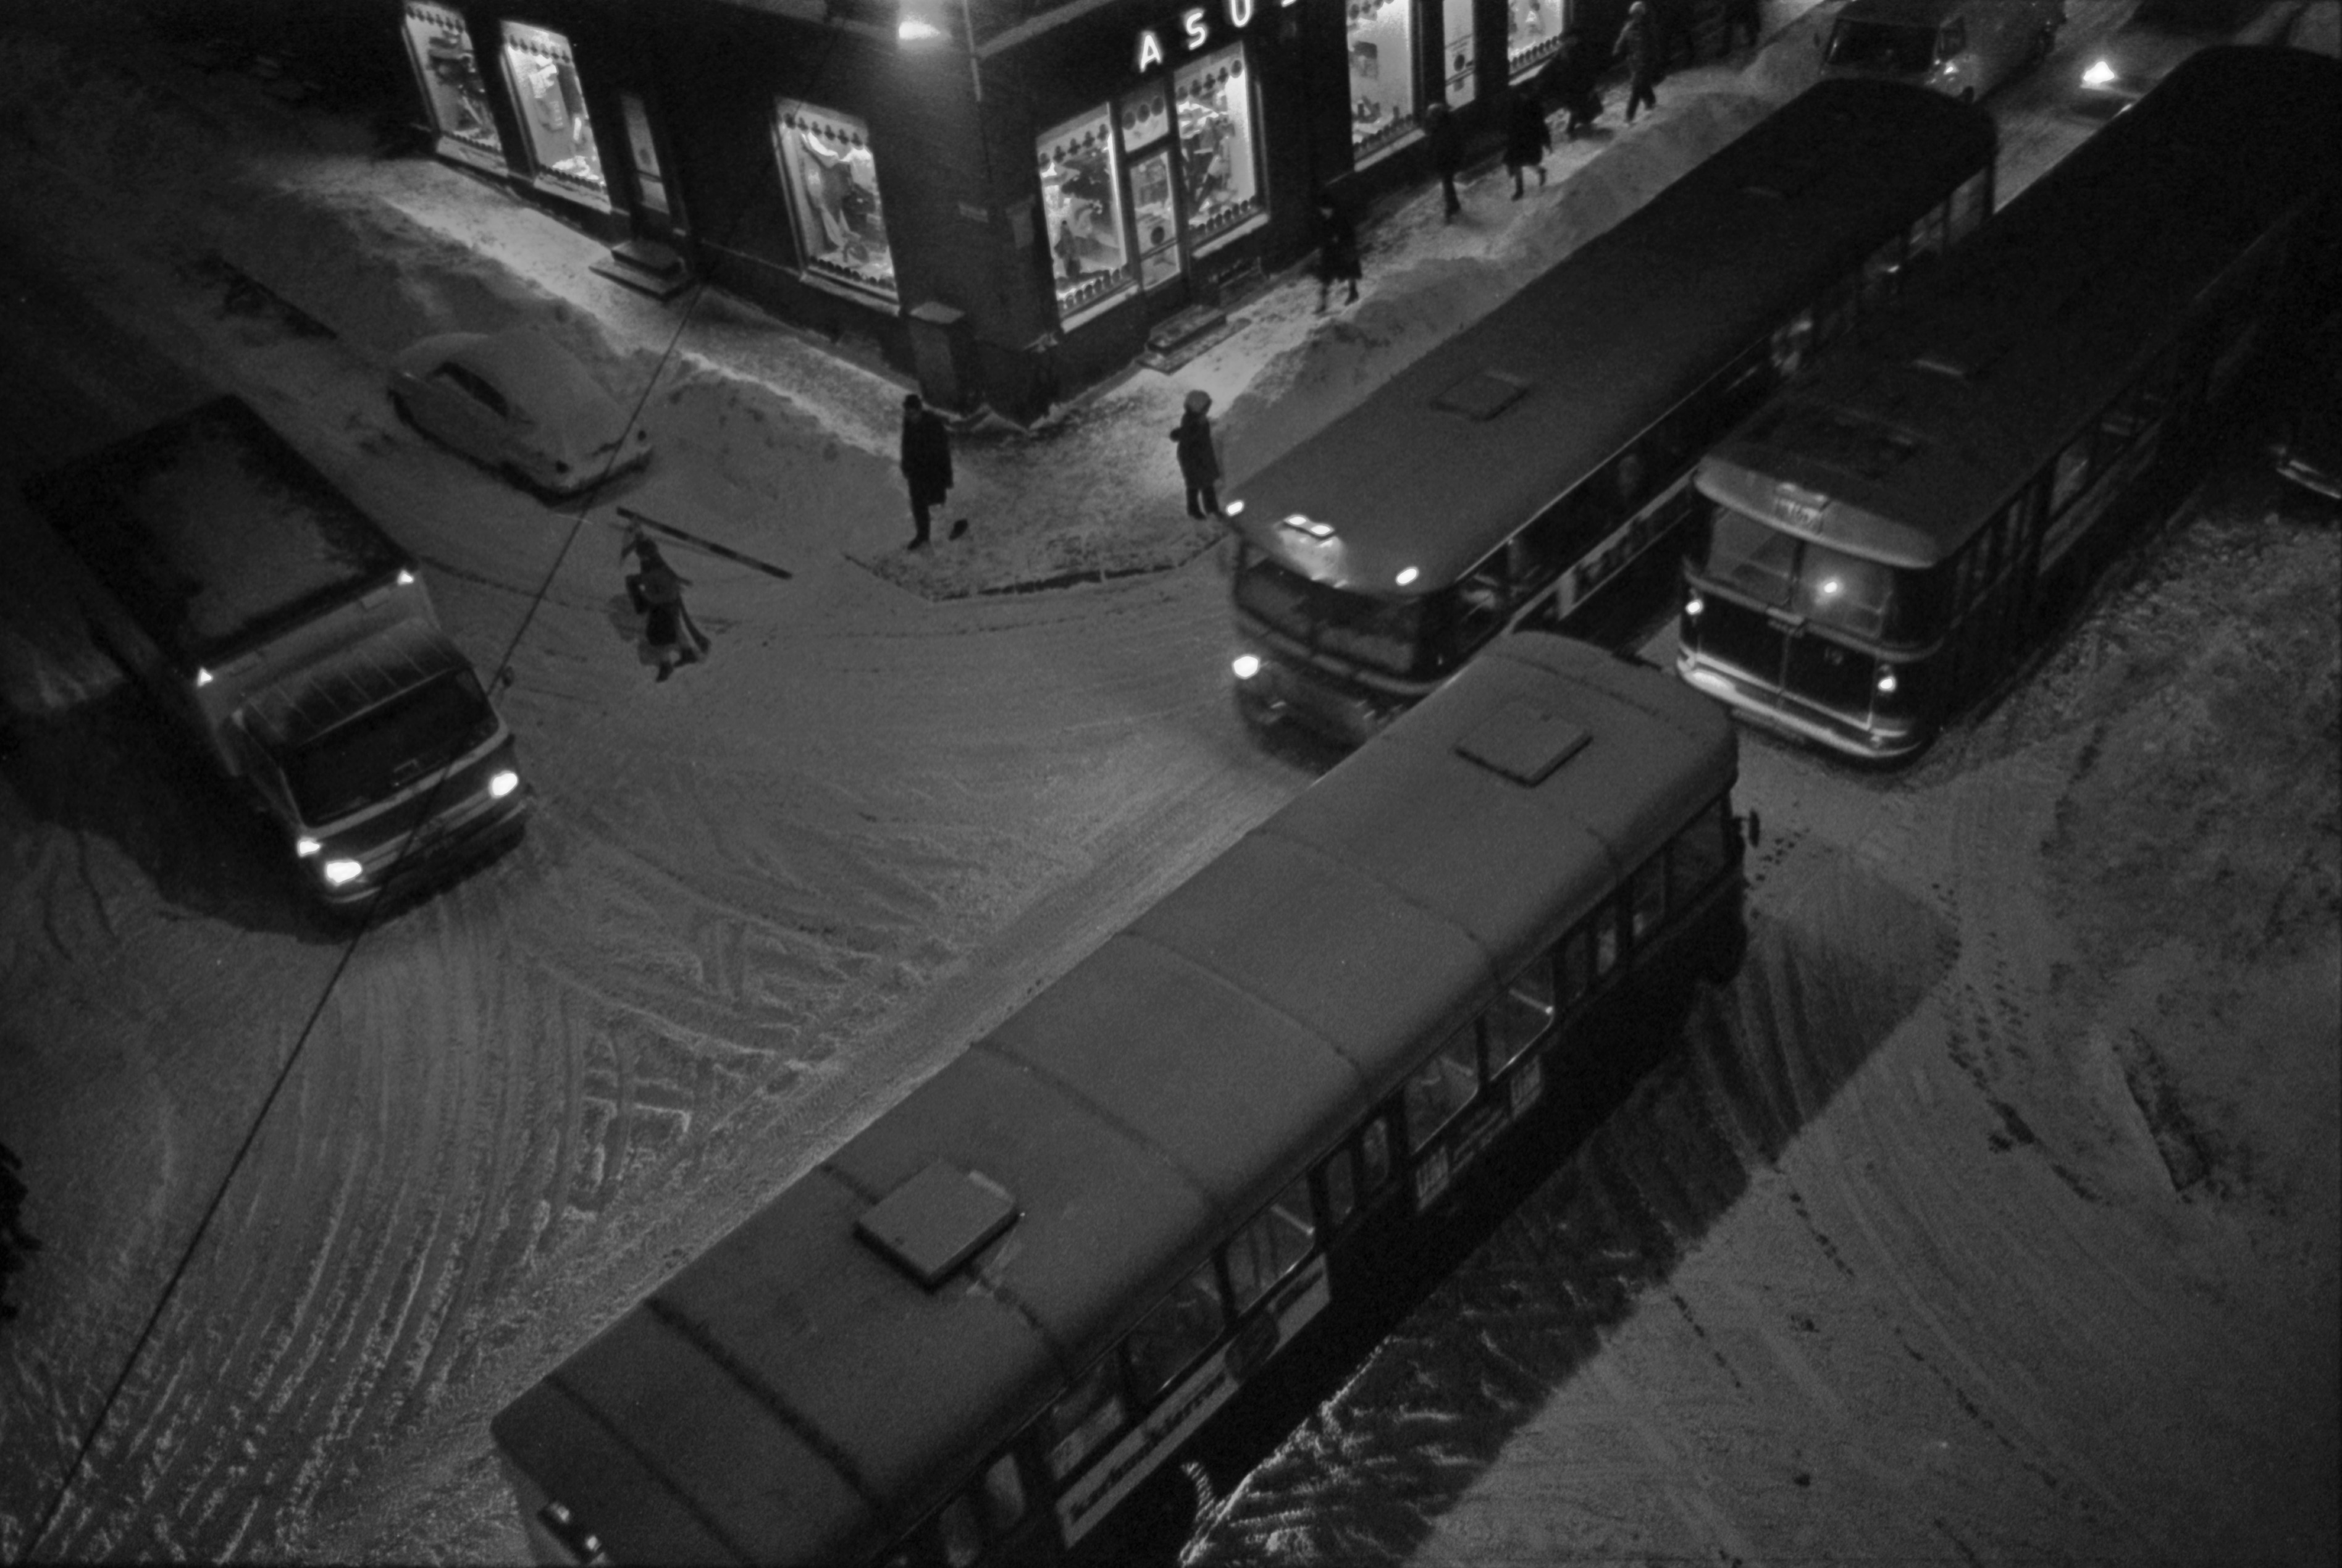 Liisankatu 6. Meritullinkatu 24. Busseja, autoja ja jalankulkijoita talvi-iltana lumisen Liisankadun ja Meritullinkadun risteyksessä. Kuvattu Ristan olohuoneen ikkunasta.